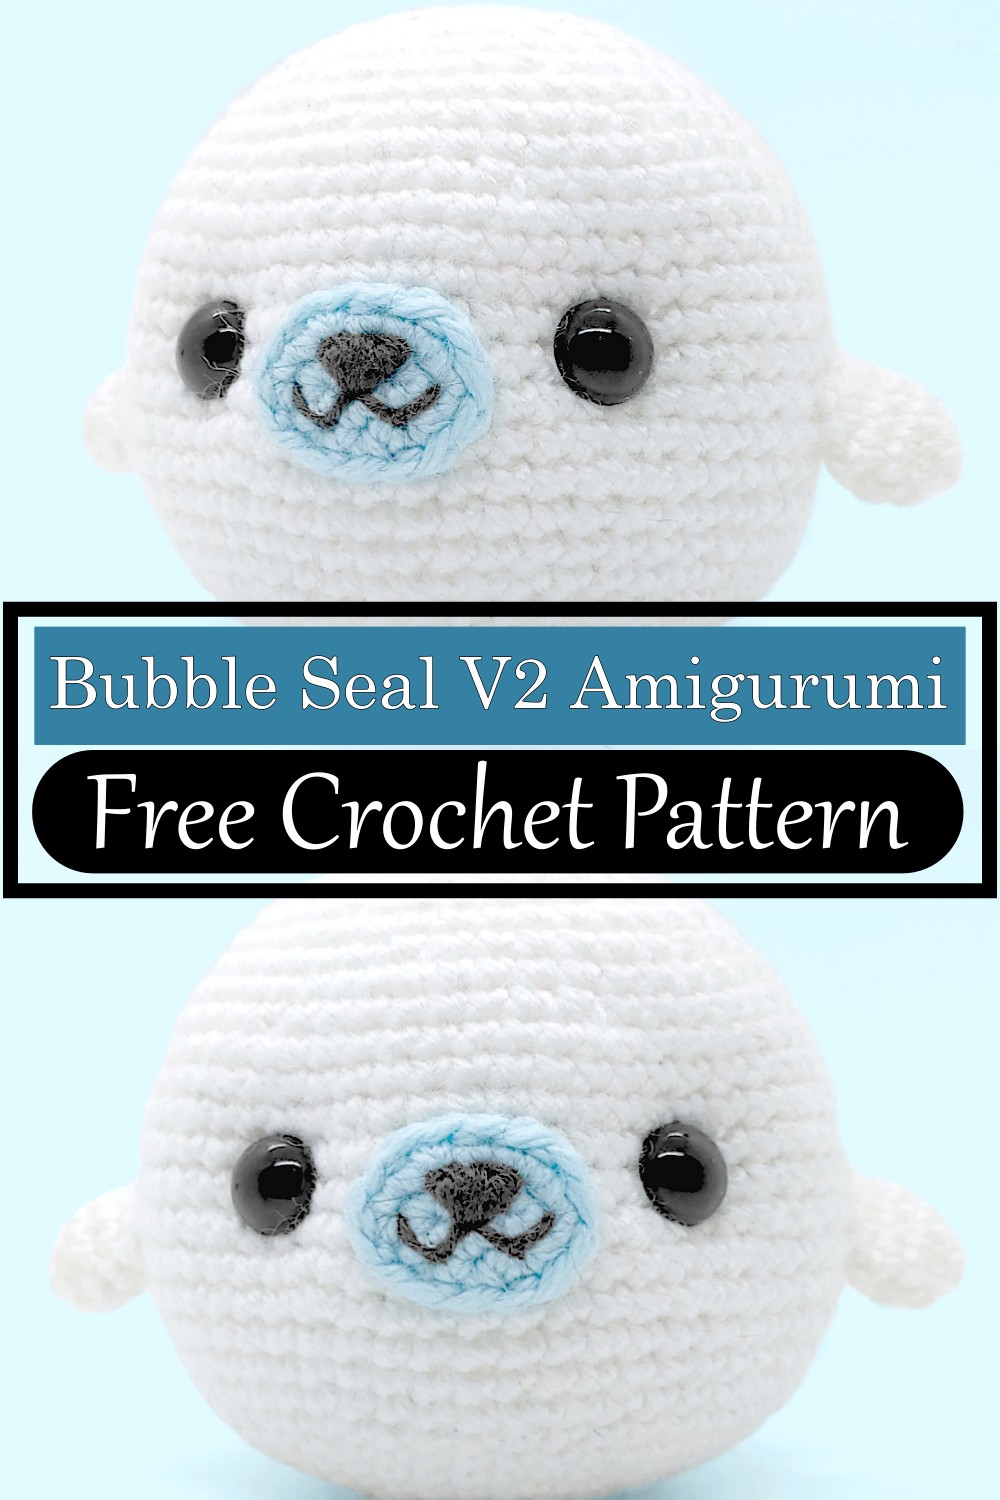 Bubble Seal V2 Amigurumi